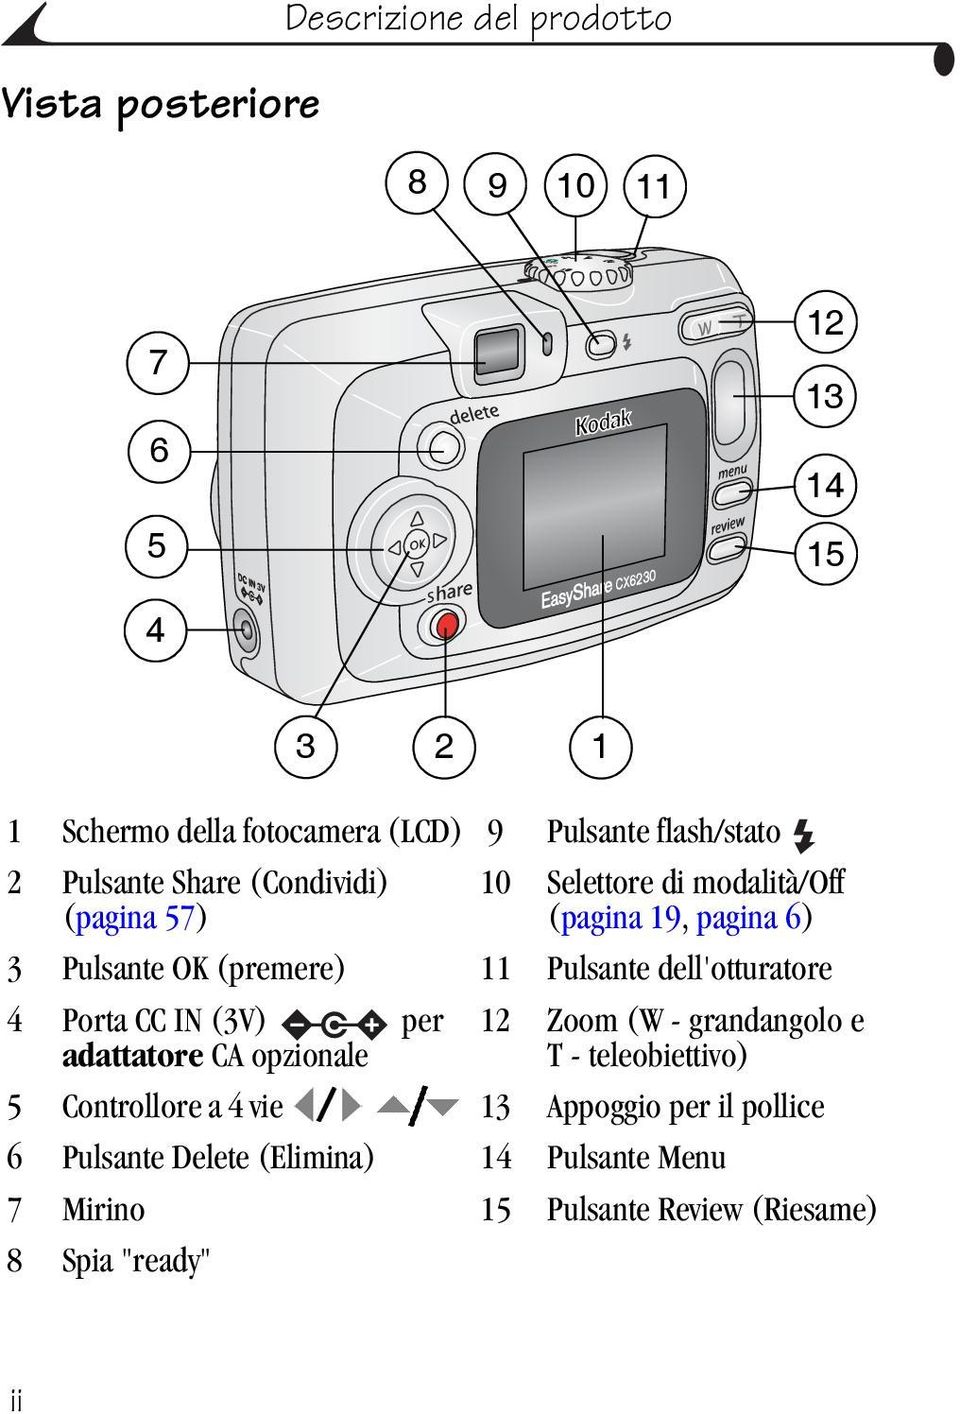 11 Pulsante dell'otturatore 4 Porta CC IN (3V) per adattatore CA opzionale 12 Zoom (W - grandangolo e T - teleobiettivo) 5